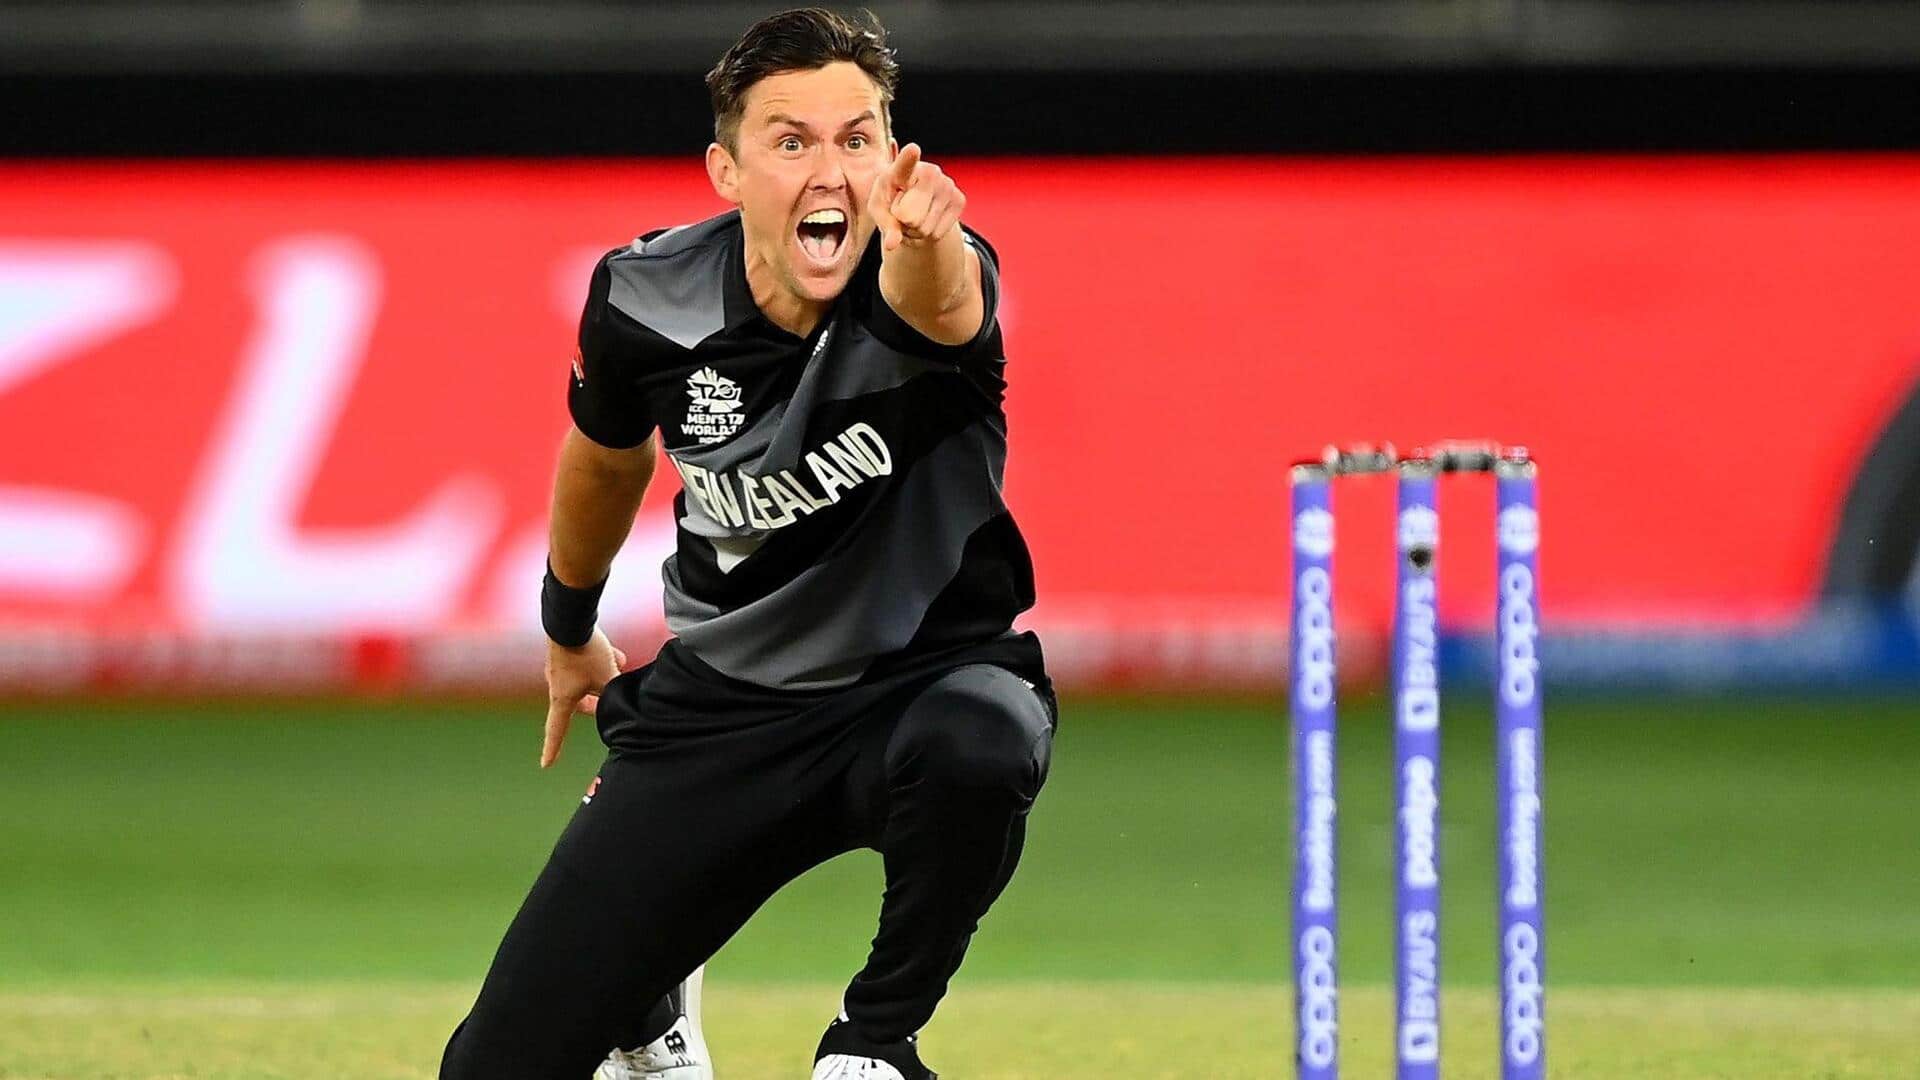 ऑस्ट्रेलिया बनाम न्यूजीलैंड: ट्रेंट बोल्ट ने चटकाए 3 विकेट, जानिए उनके आंकड़े 